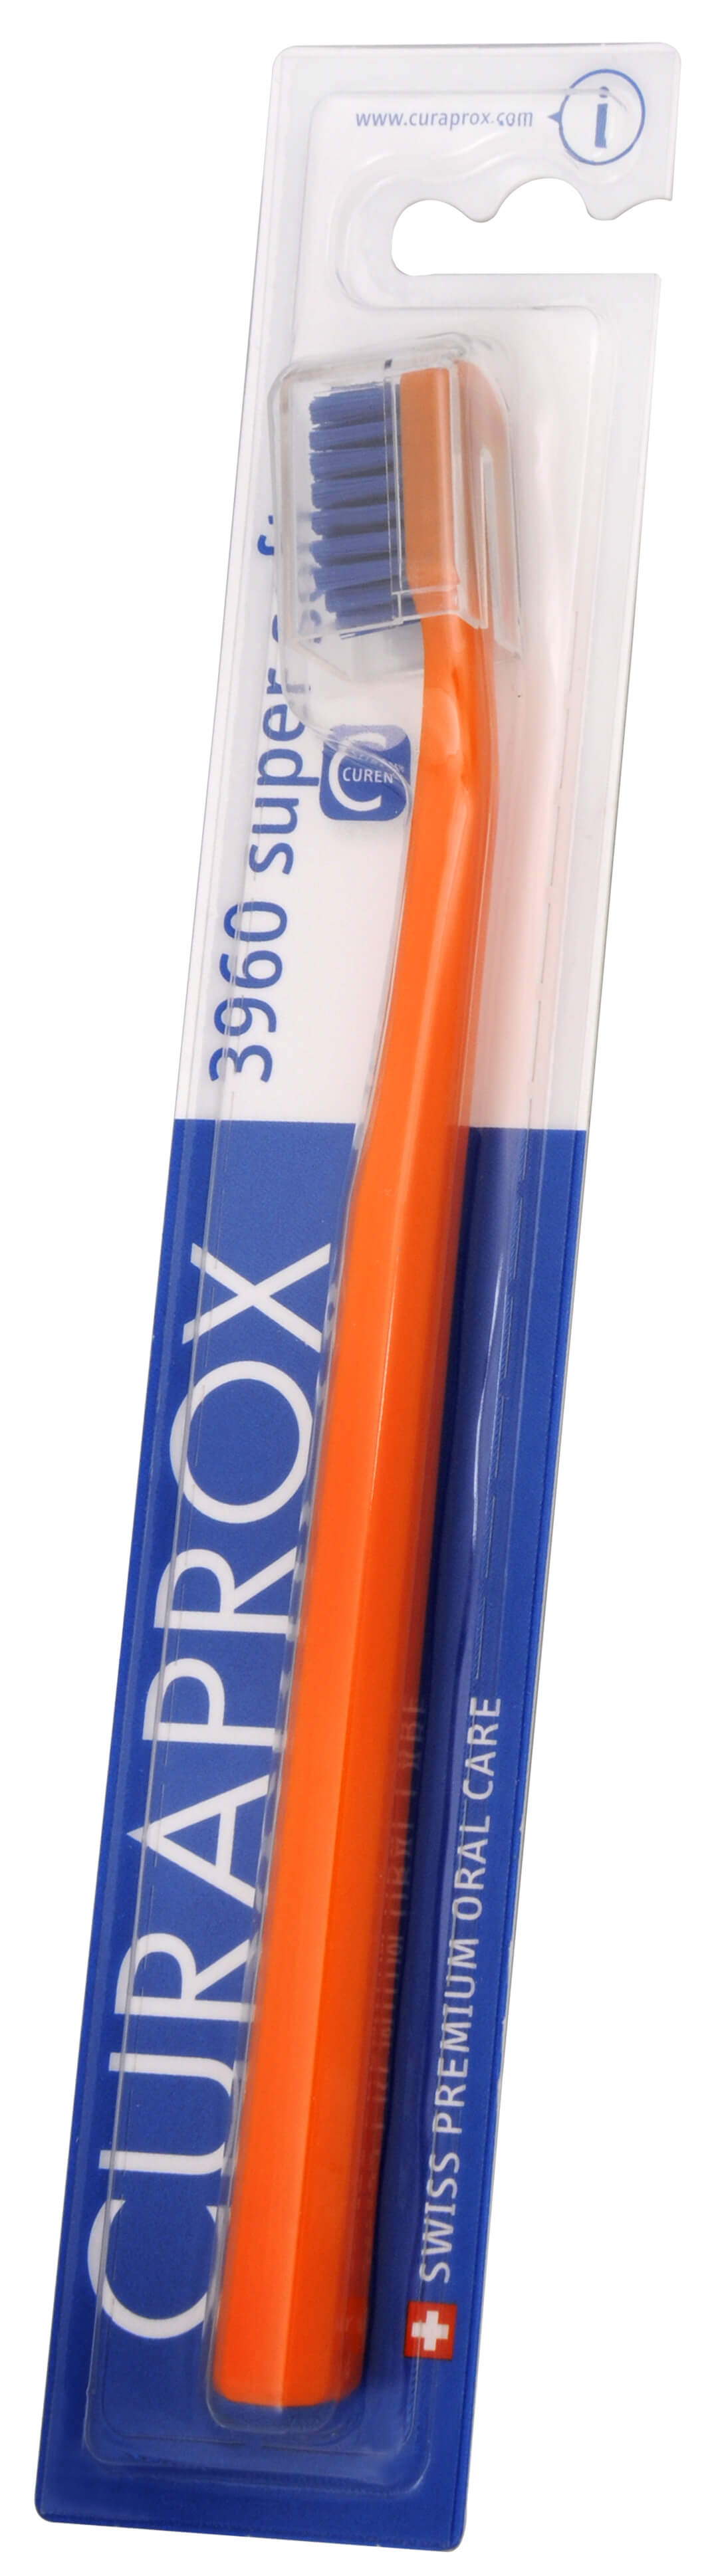 Curaprox Extra jemný zubní kartáček 3960 Super Soft 1 ks